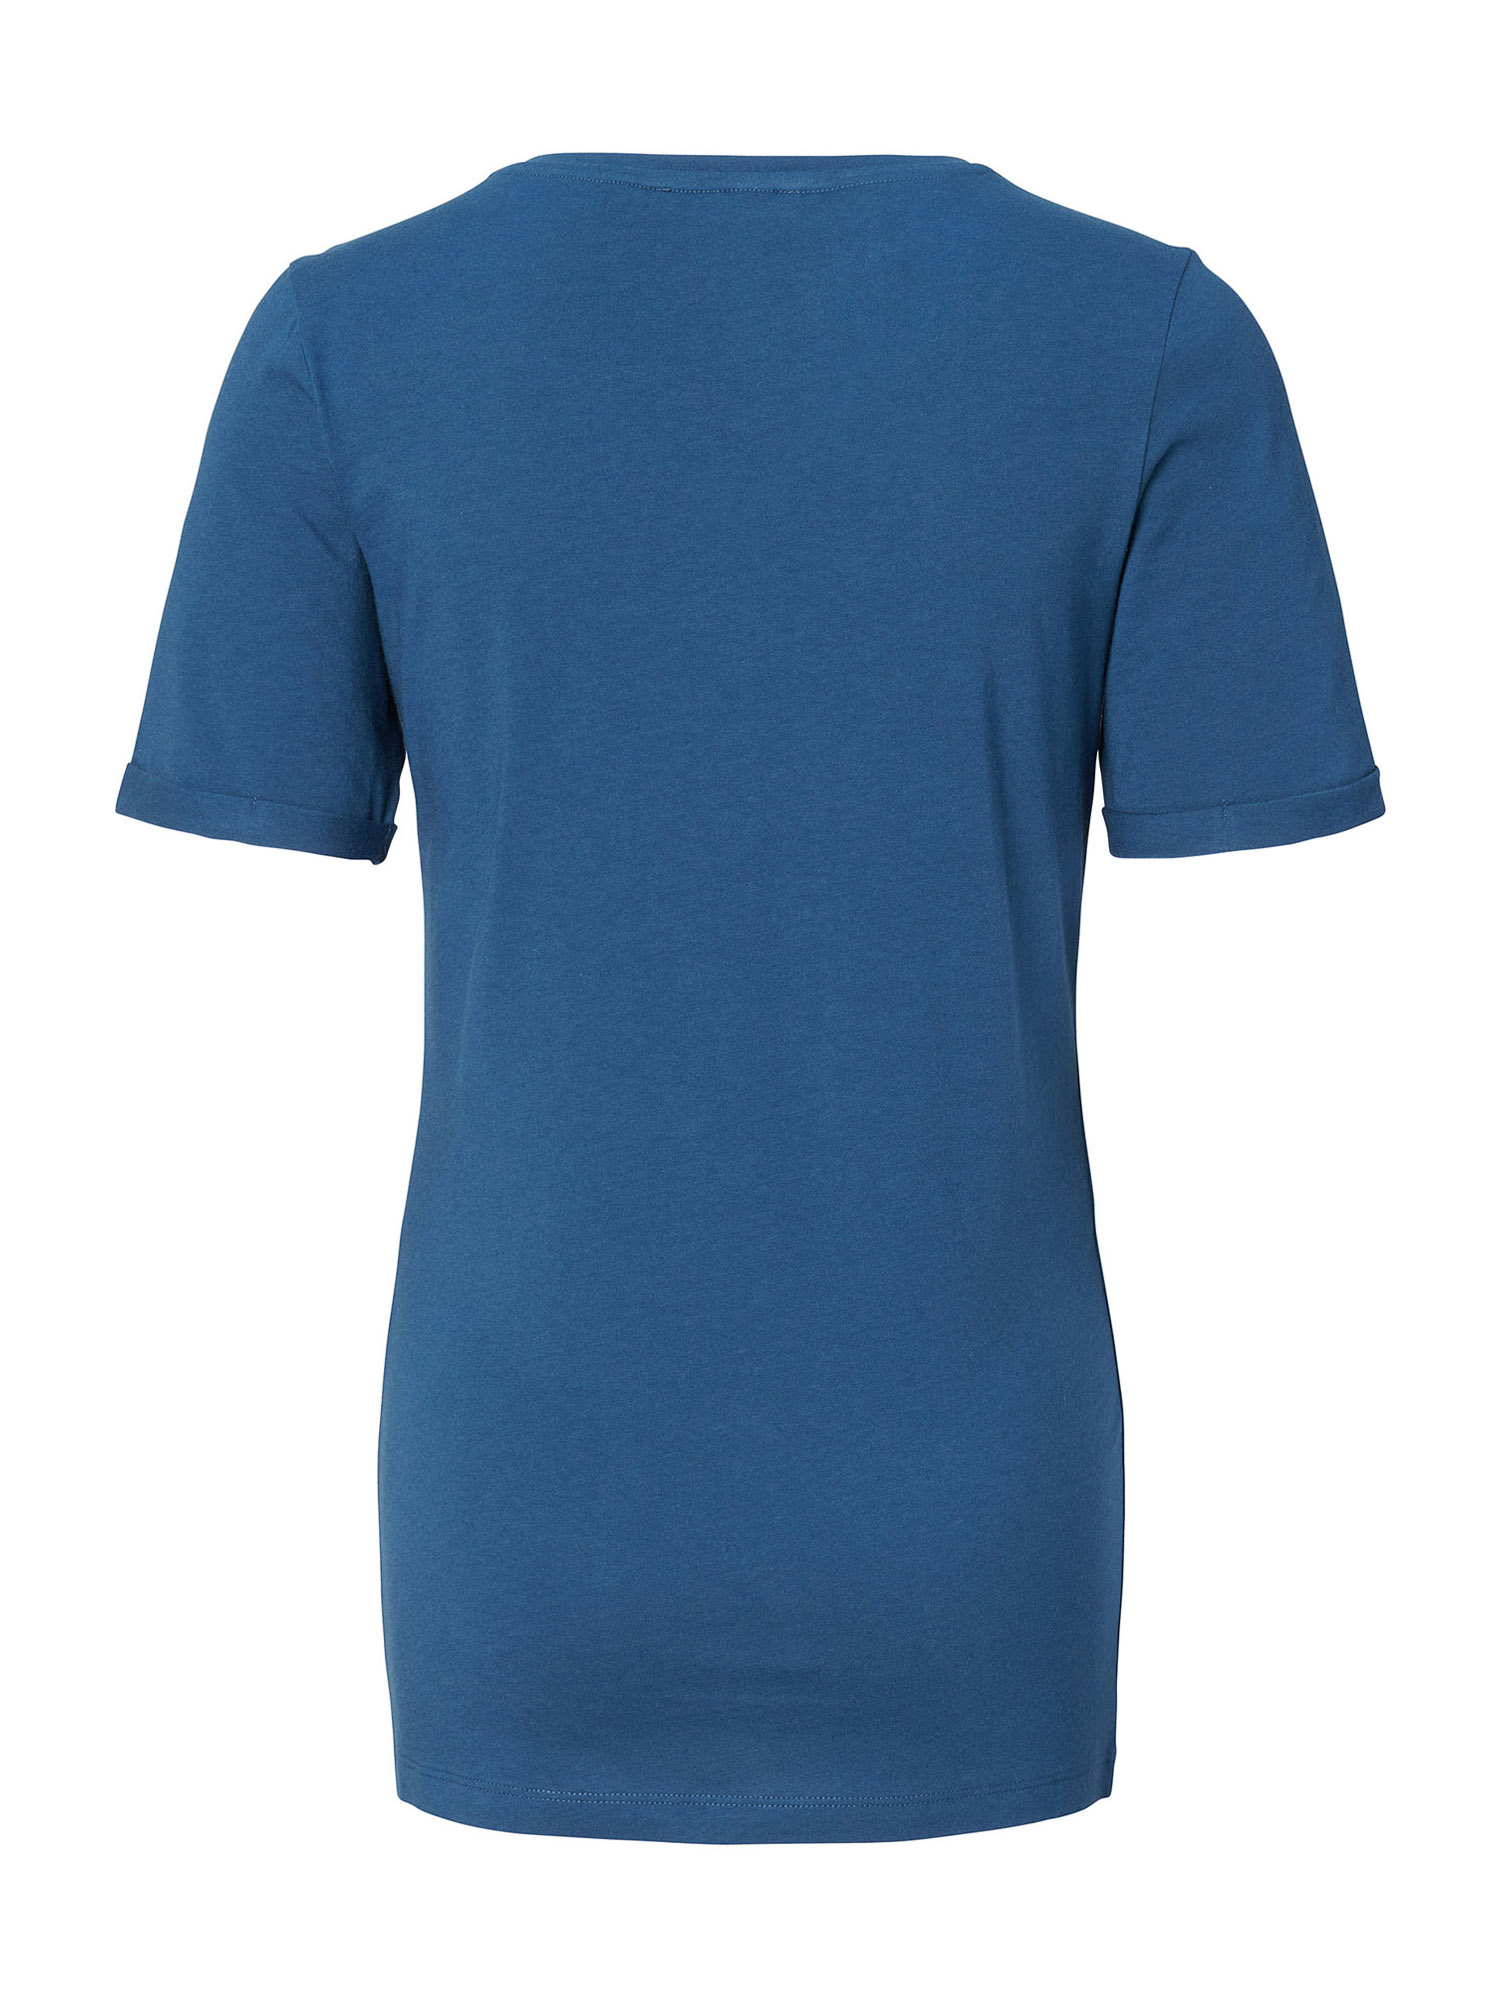 Supermom T-Shirt Crush in Blau, Royalblau, Hellblau, Navy 